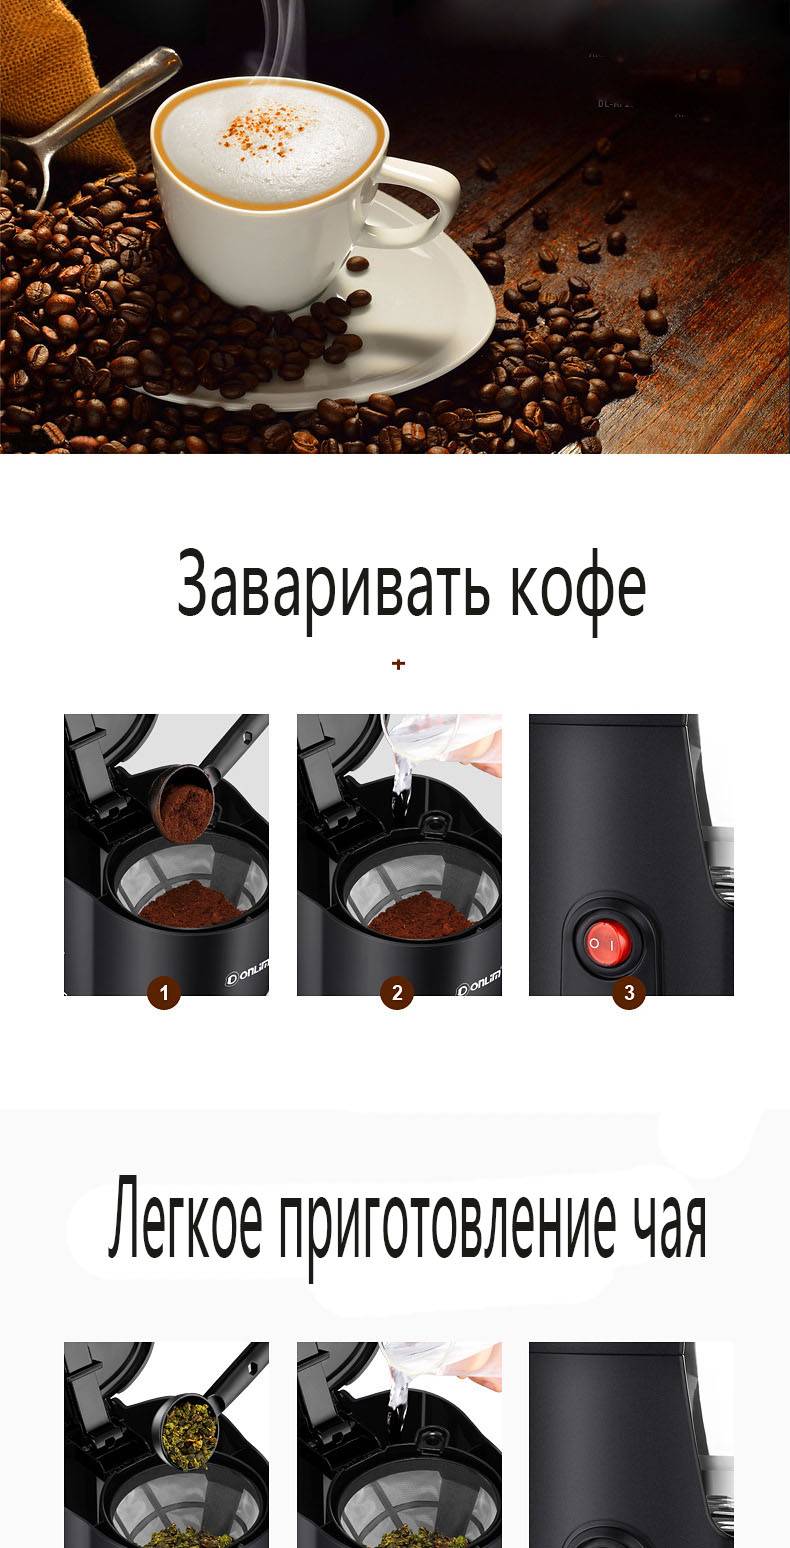 Капельная кофеварка: плюсы и минусы кофемашины данного типа, как выбрать для дома, а также отзывы